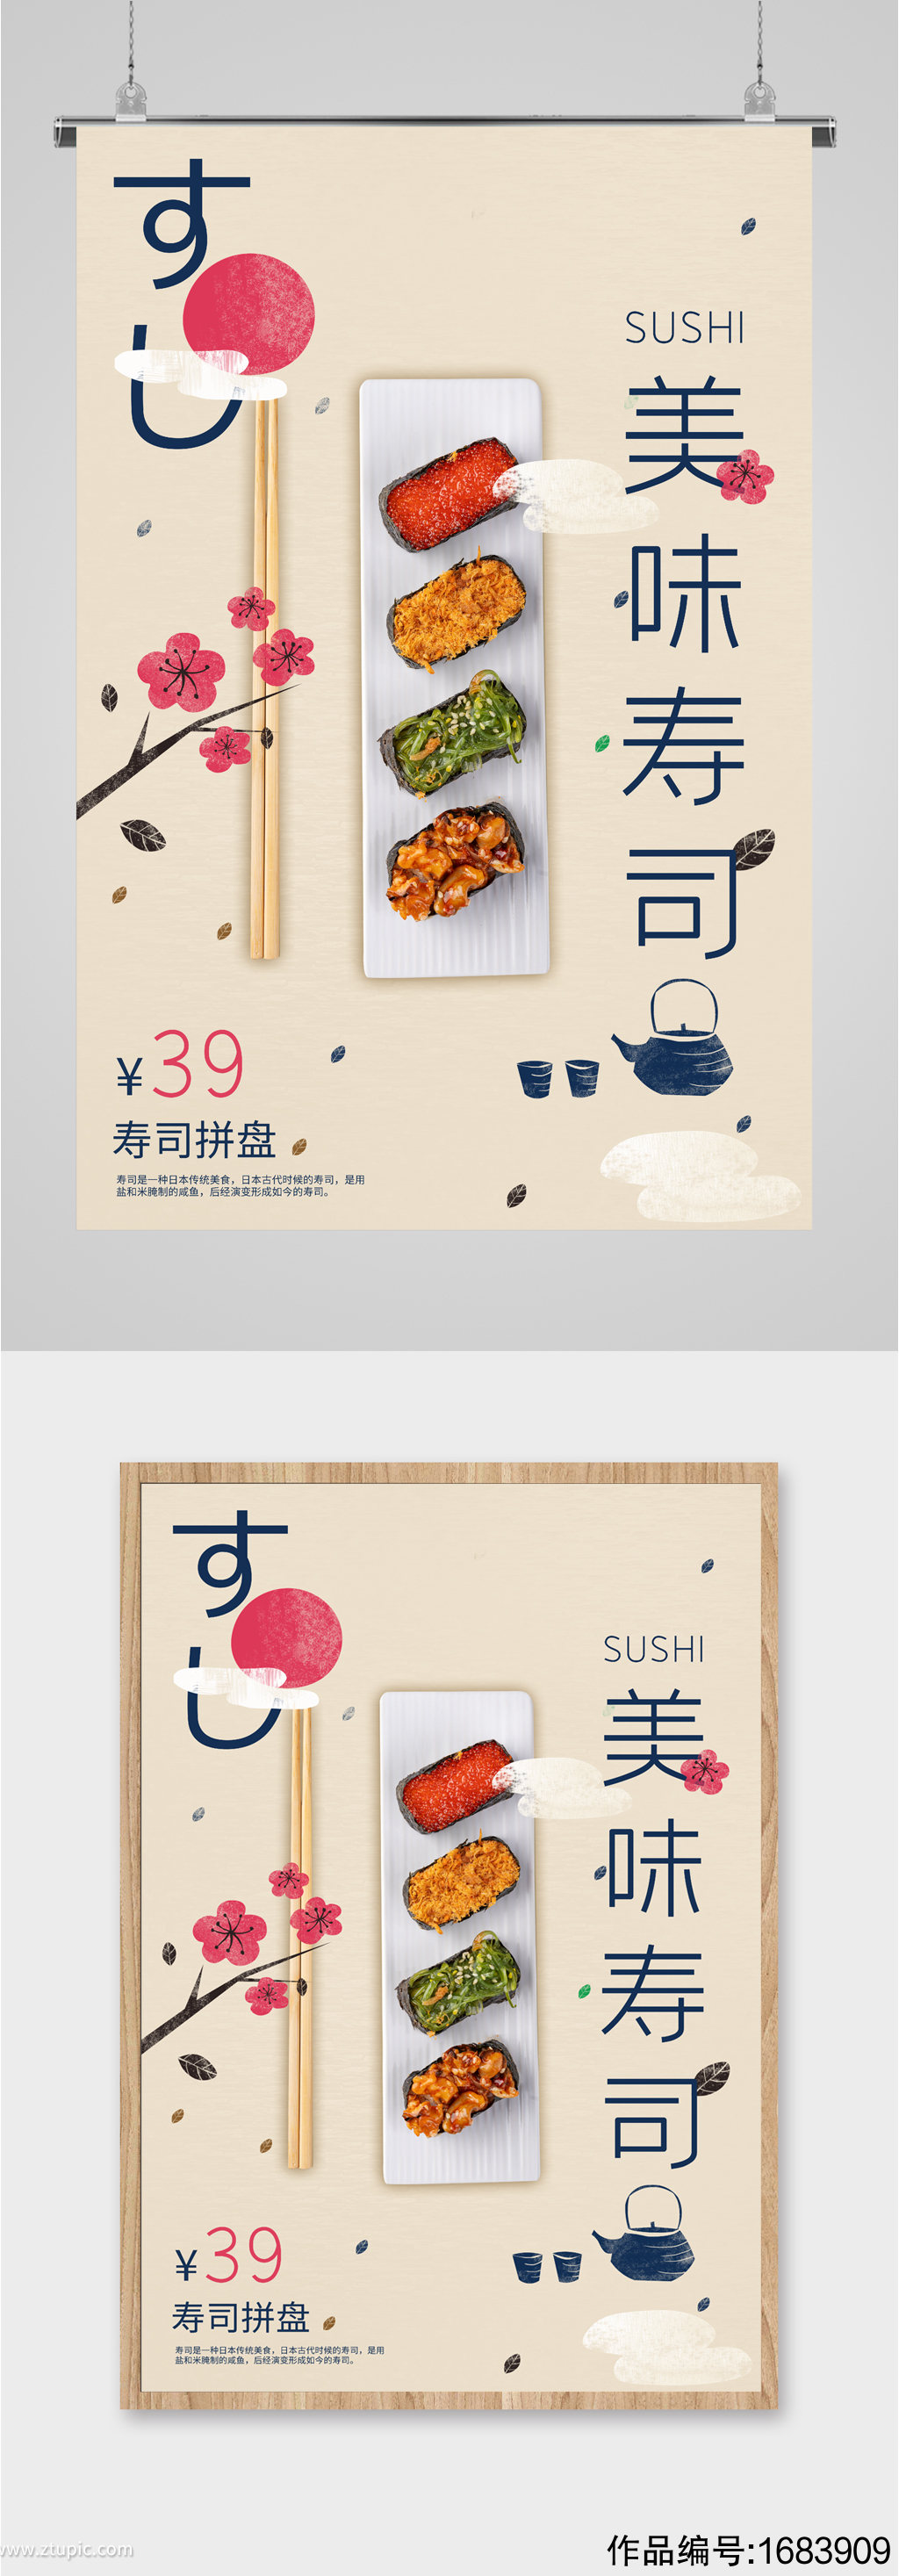 美味寿司口味宣传海报素材